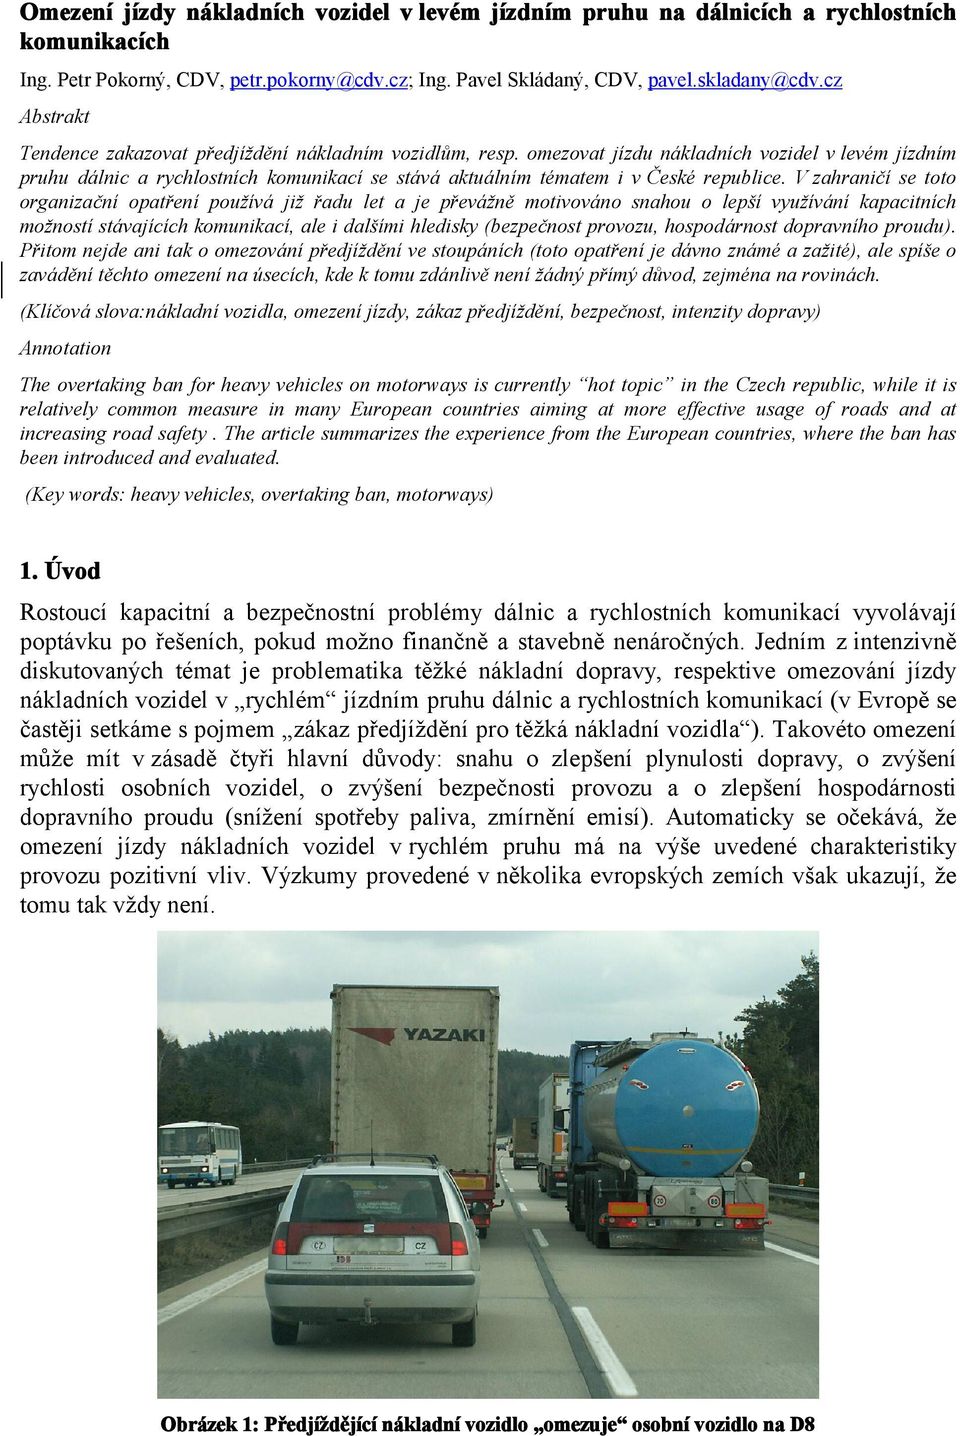 omezovat jízdu nákladních vozidel v levém jízdním pruhu dálnic a rychlostních komunikací se stává aktuálním tématem i v České republice.